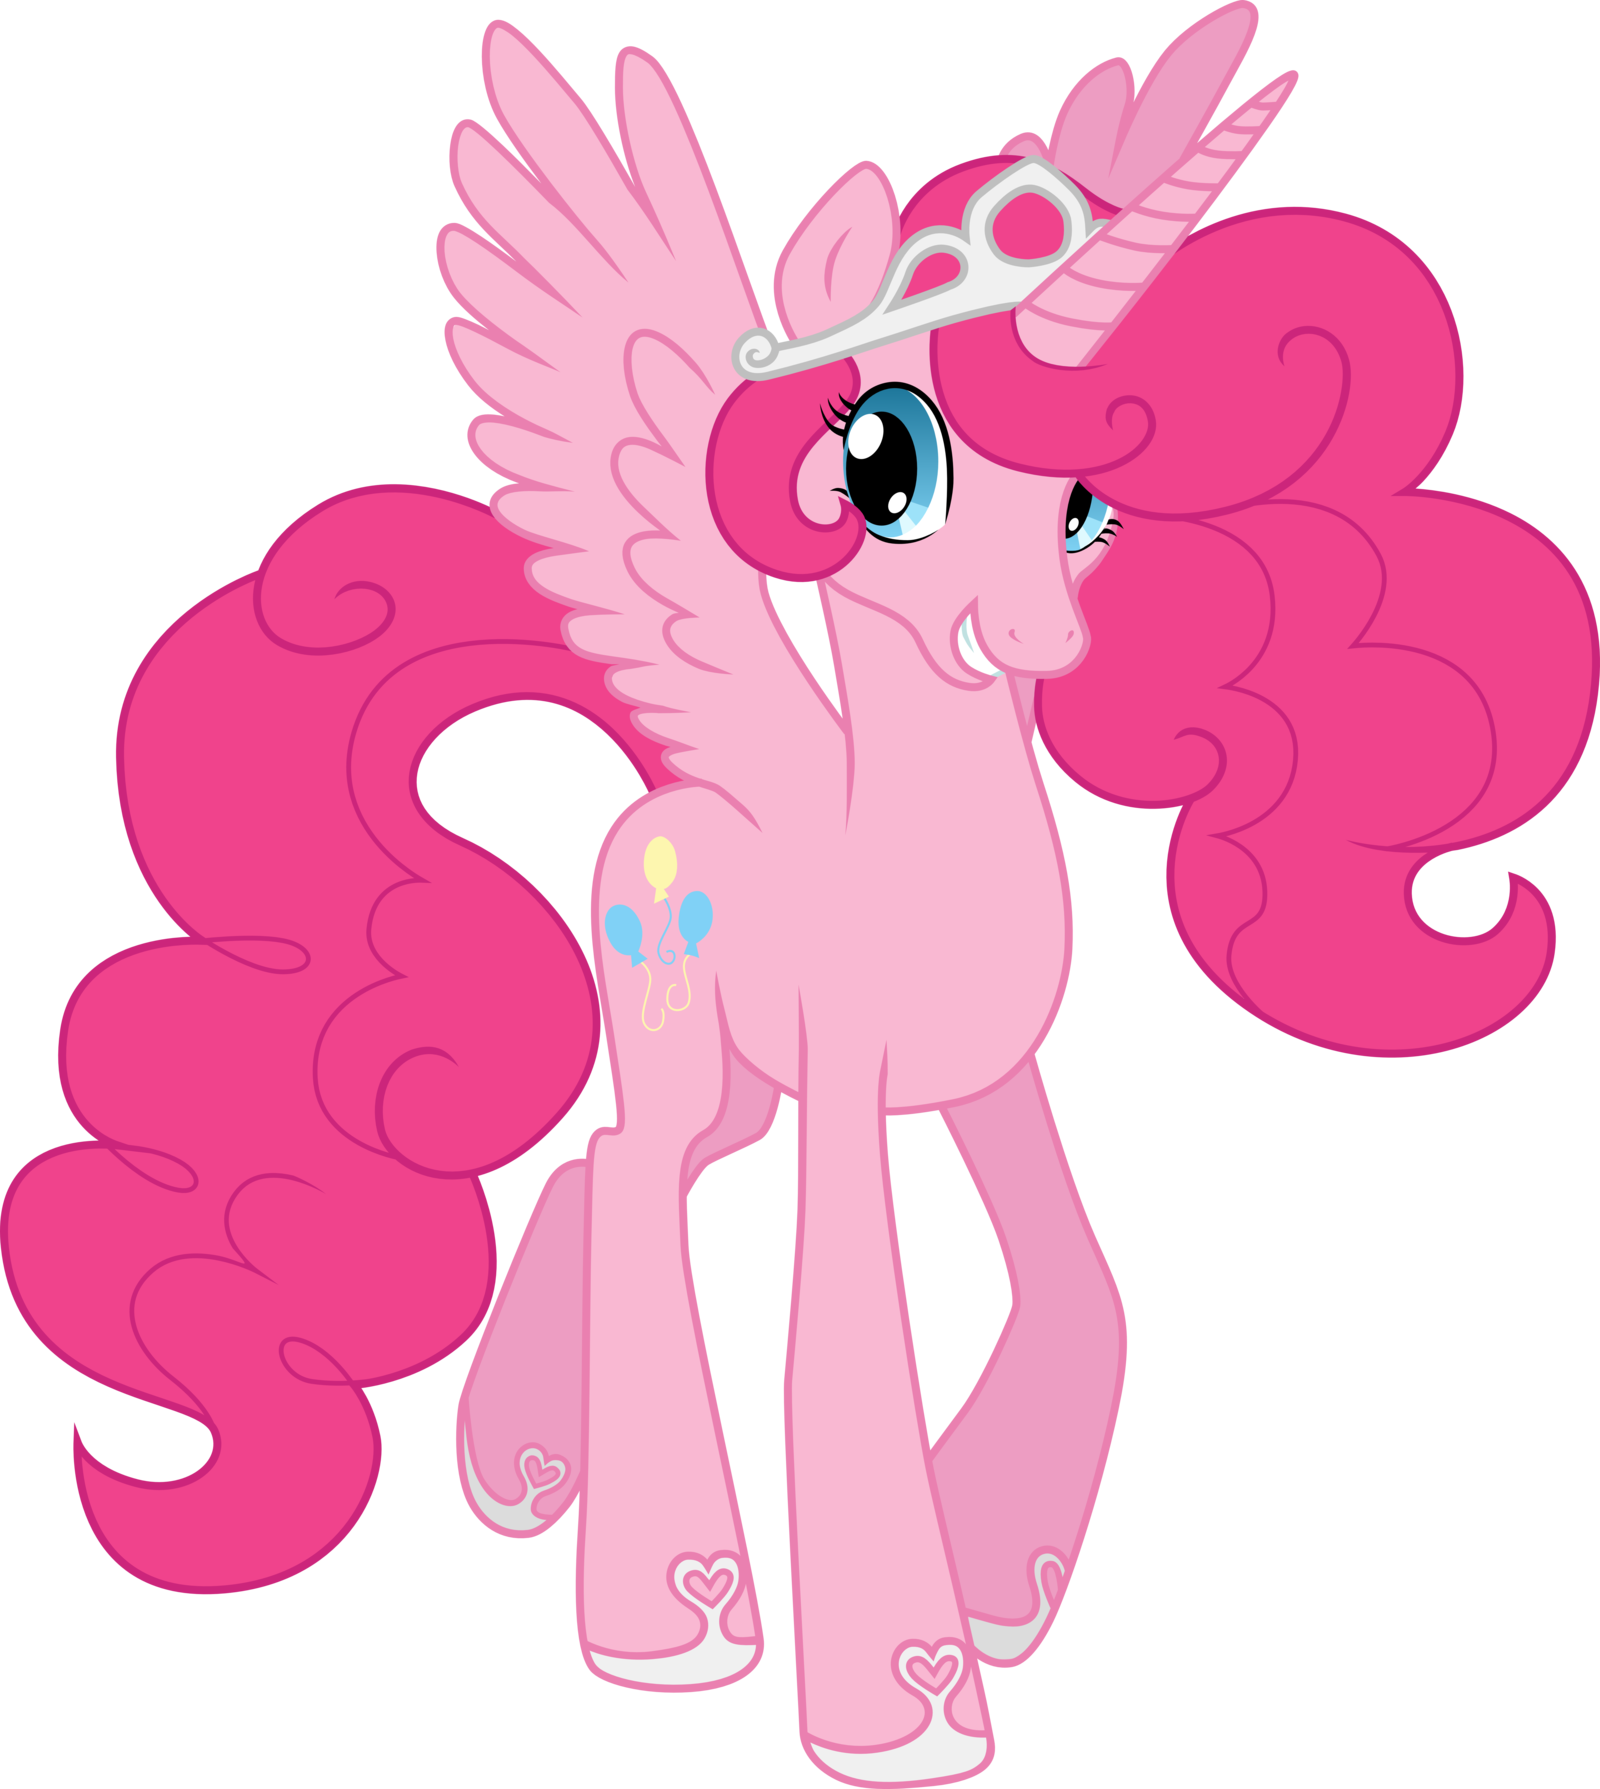 Как зовут розовую пони. My little Pony Пинки. My little Pony Пинки Пай Аликорн. Майлитл пони пенки Пай. Маллителпони ПИНКИПАЙ.